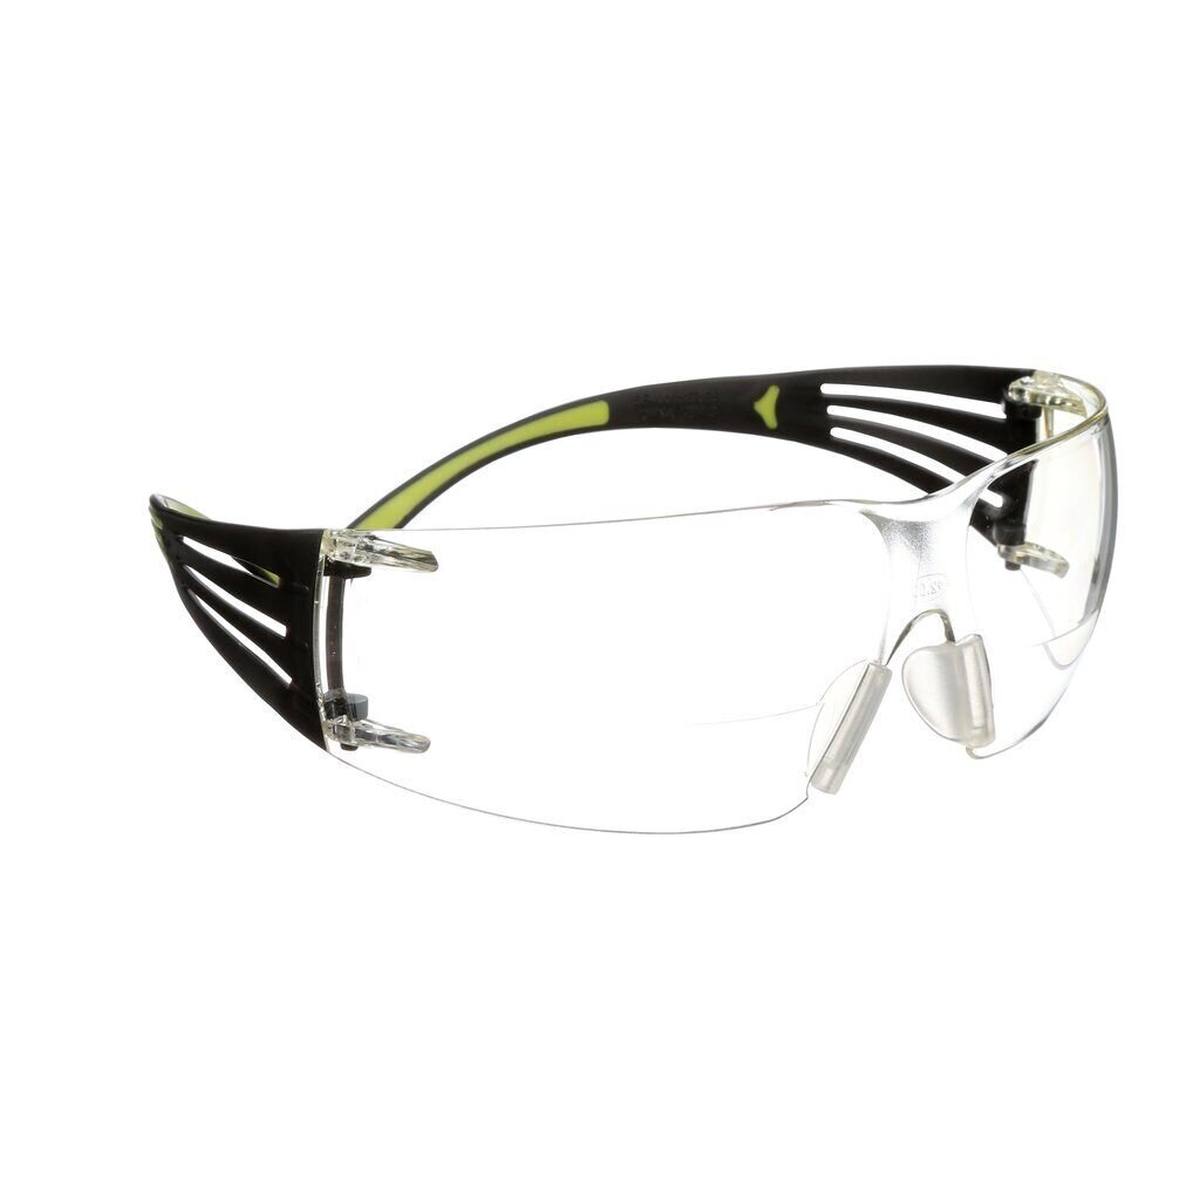 3M SecureFit 400 Reader veiligheidsbril, zwart/groene veren, anti-kras/anti-fog coating, helder glas met +2.5 sterkte, SF425AS/AF-E